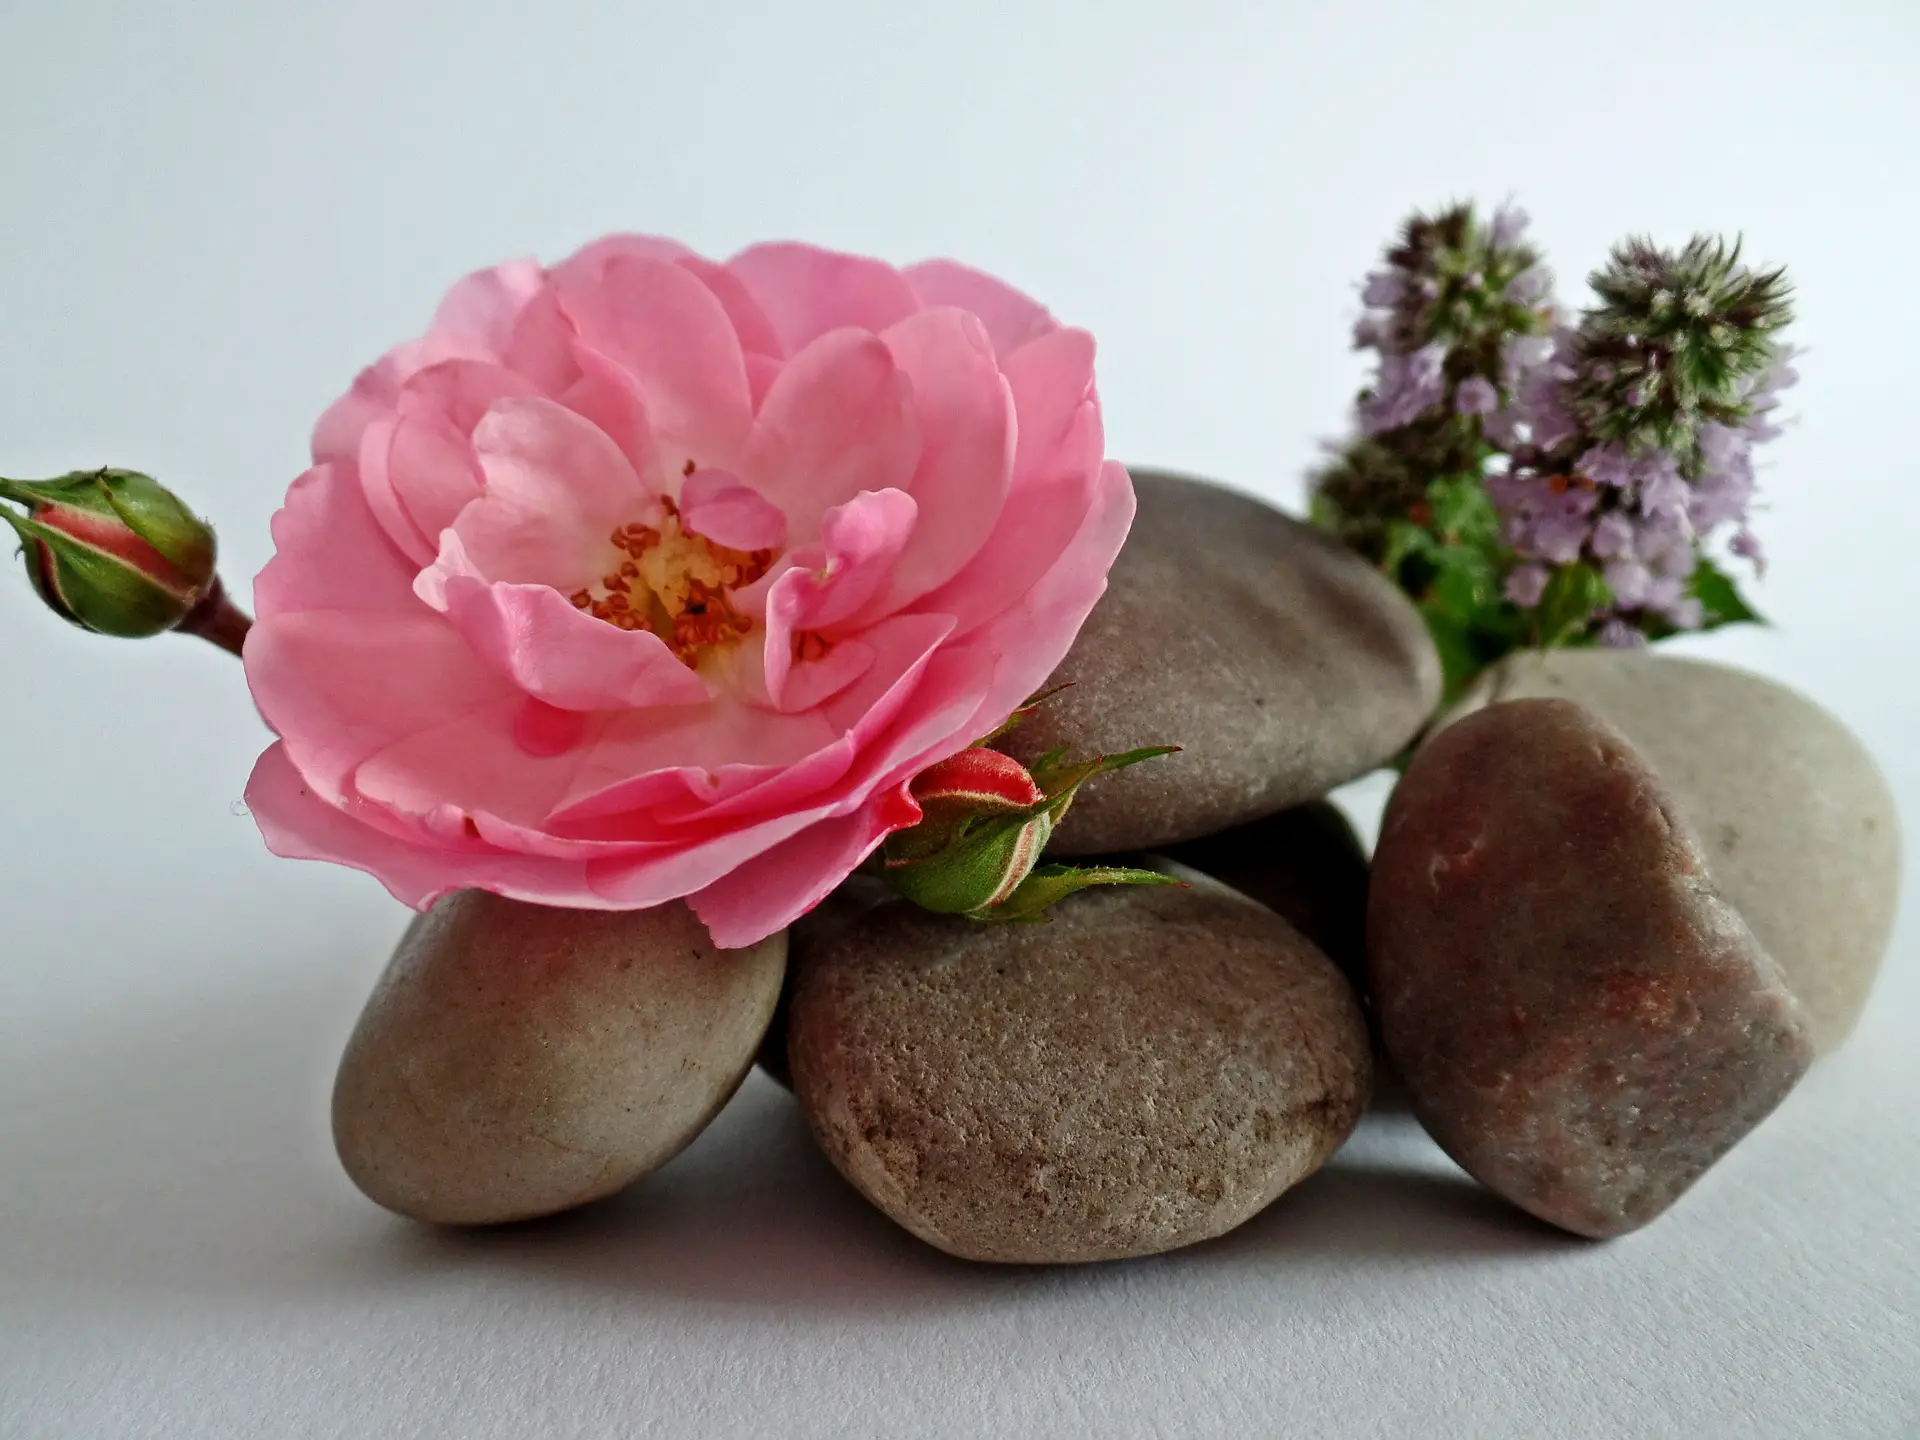 Gladde stenen en een roze bloem.